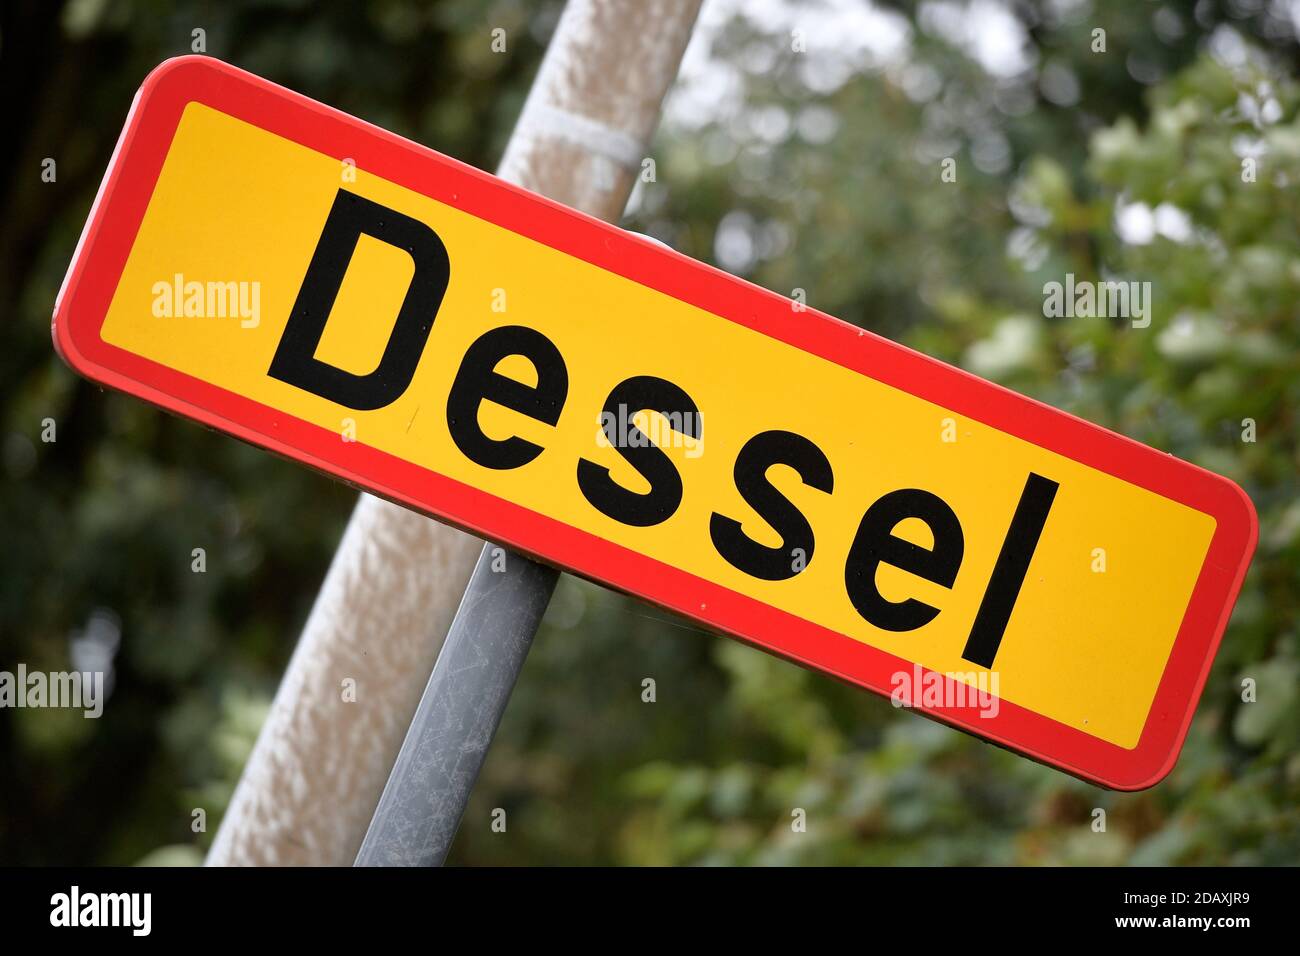 Abbildung zeigt den Namen der Gemeinde Dessel auf einem Straßenschild, Freitag 21 September 2018. BELGA FOTO YORICK JANSENS Stockfoto